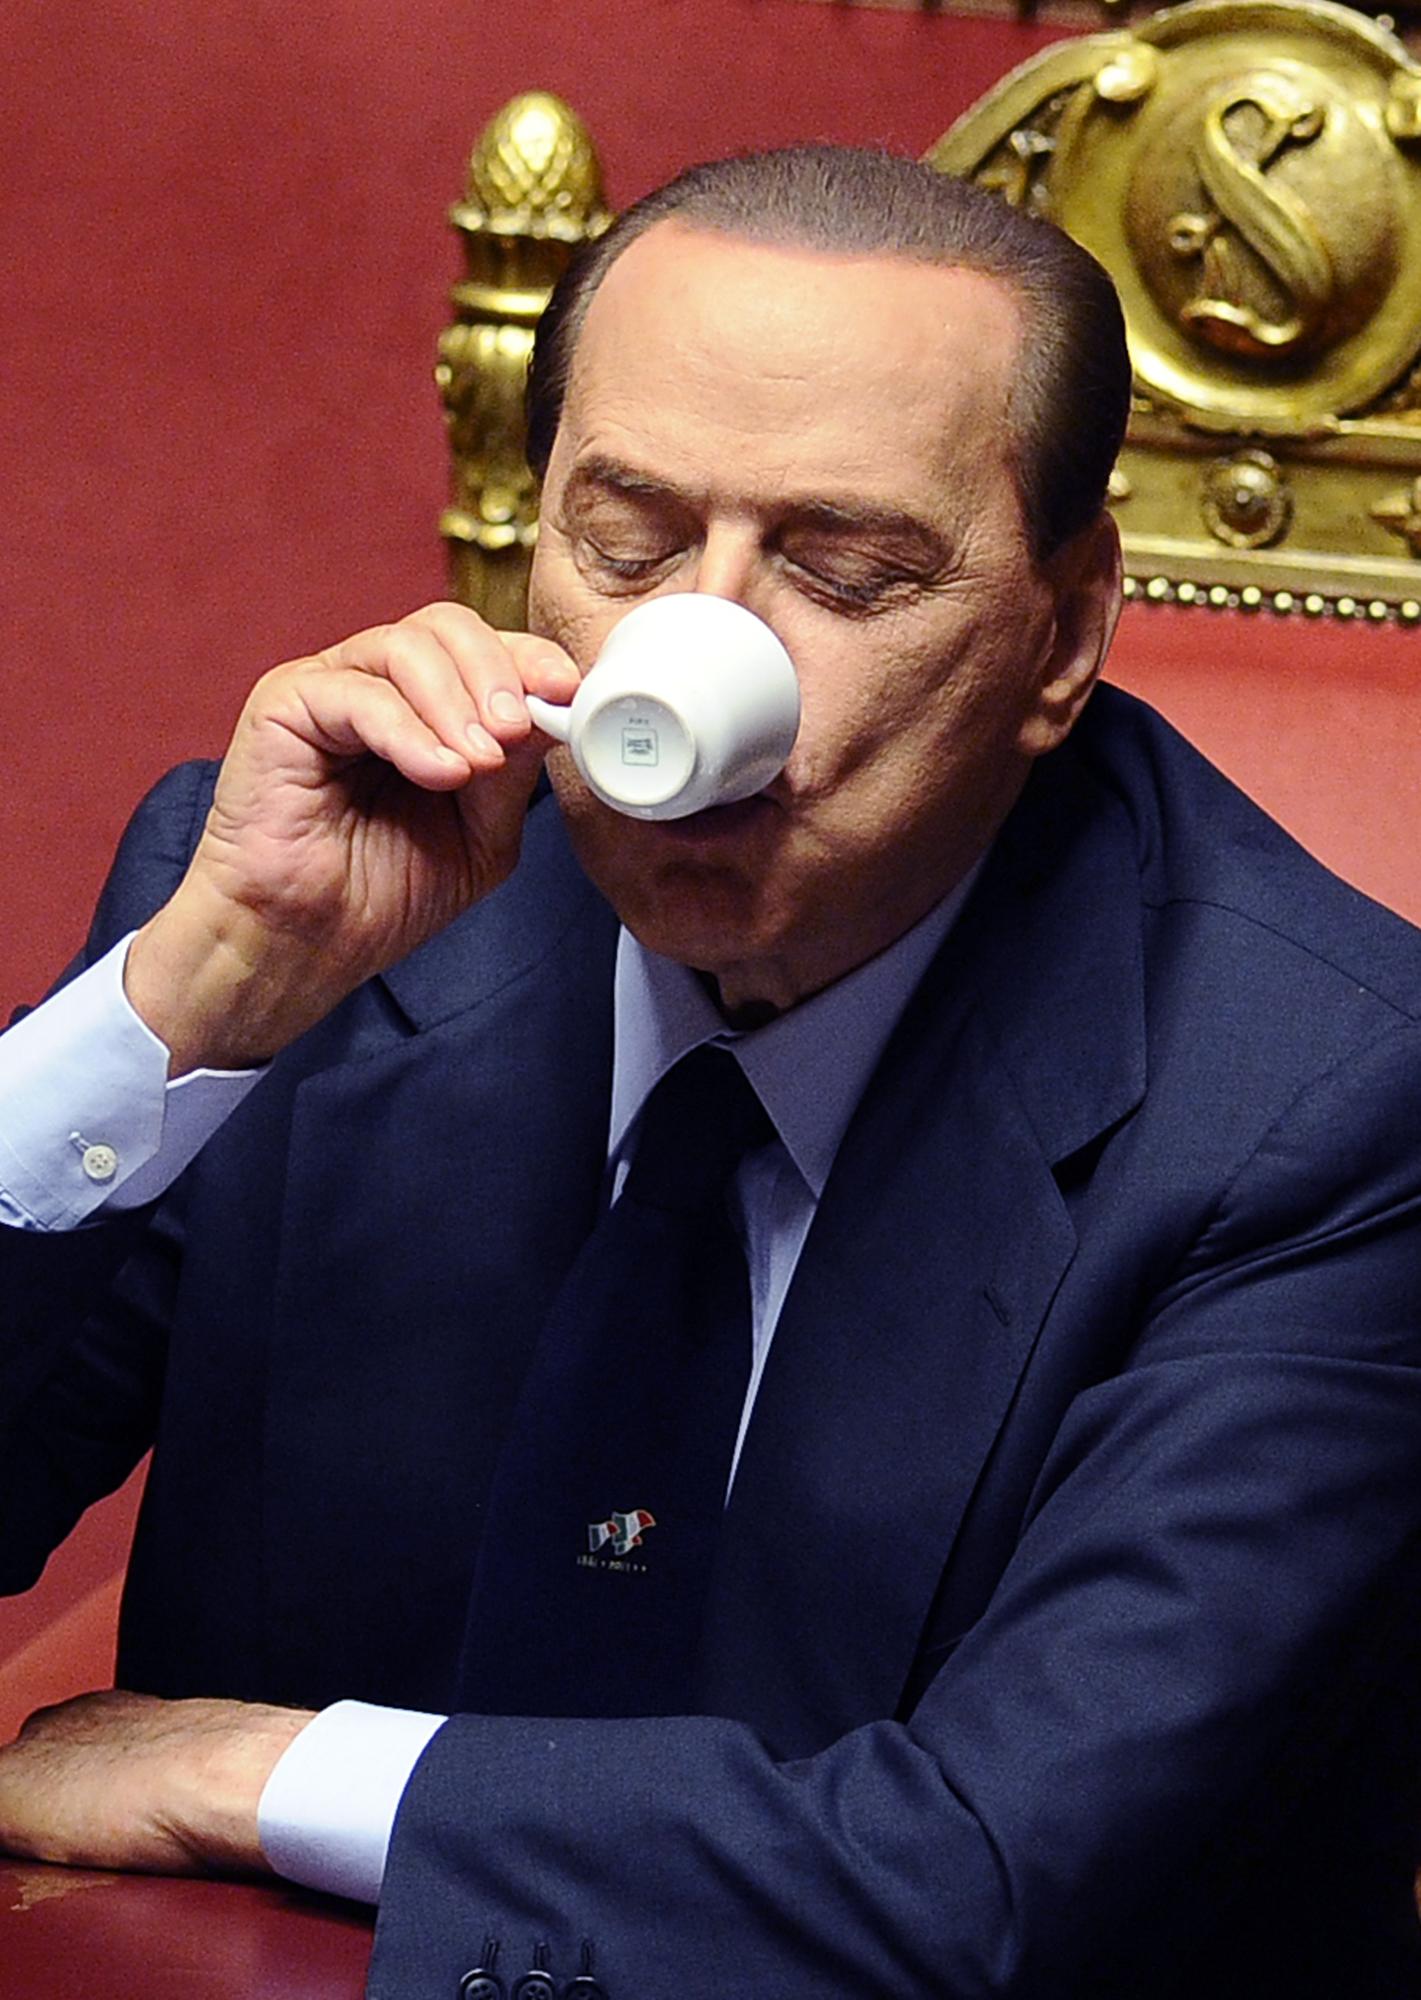 Le "Cavaliere" peut savourer son café: il restera Premier ministre. [AFP - Philippo Monteforte]